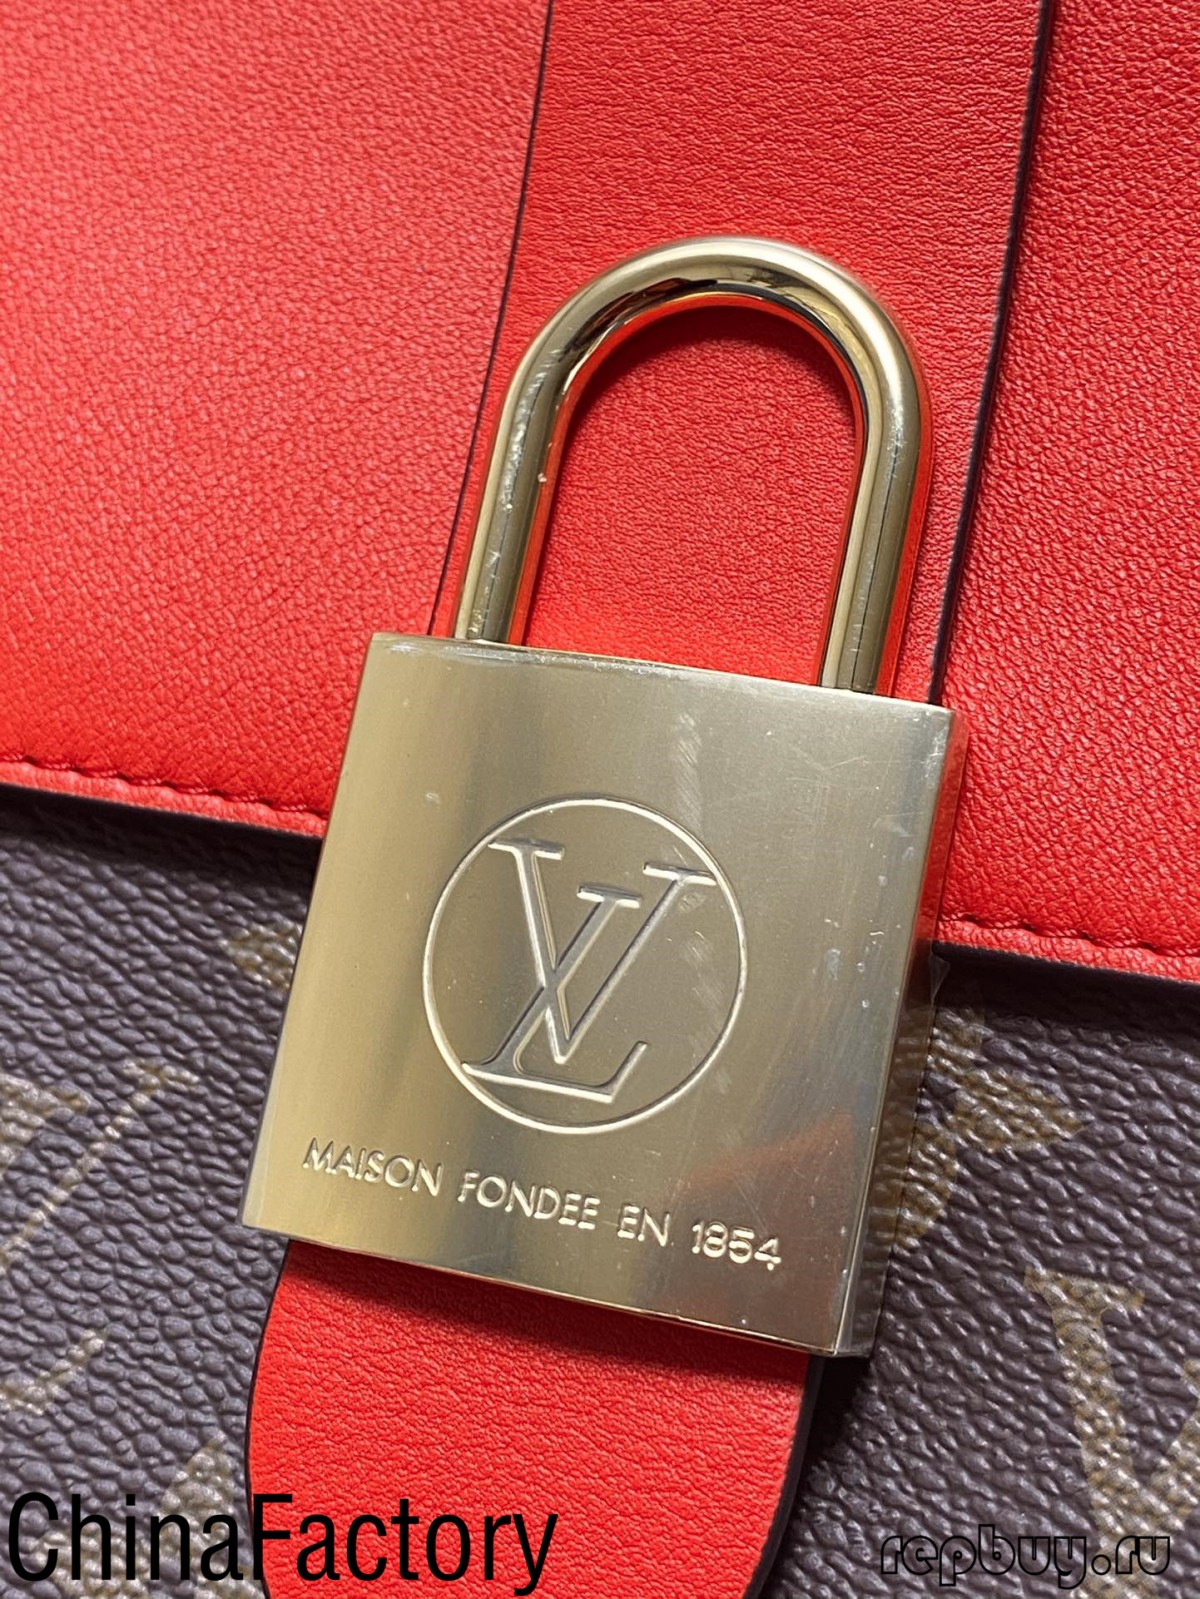 Dažas aaa replica bags atsauksmes, ar kurām var dalīties (2022. gada jauns izdevums) — labākās kvalitātes viltotās Louis Vuitton somas tiešsaistes veikals, dizaineru somas kopijas ru